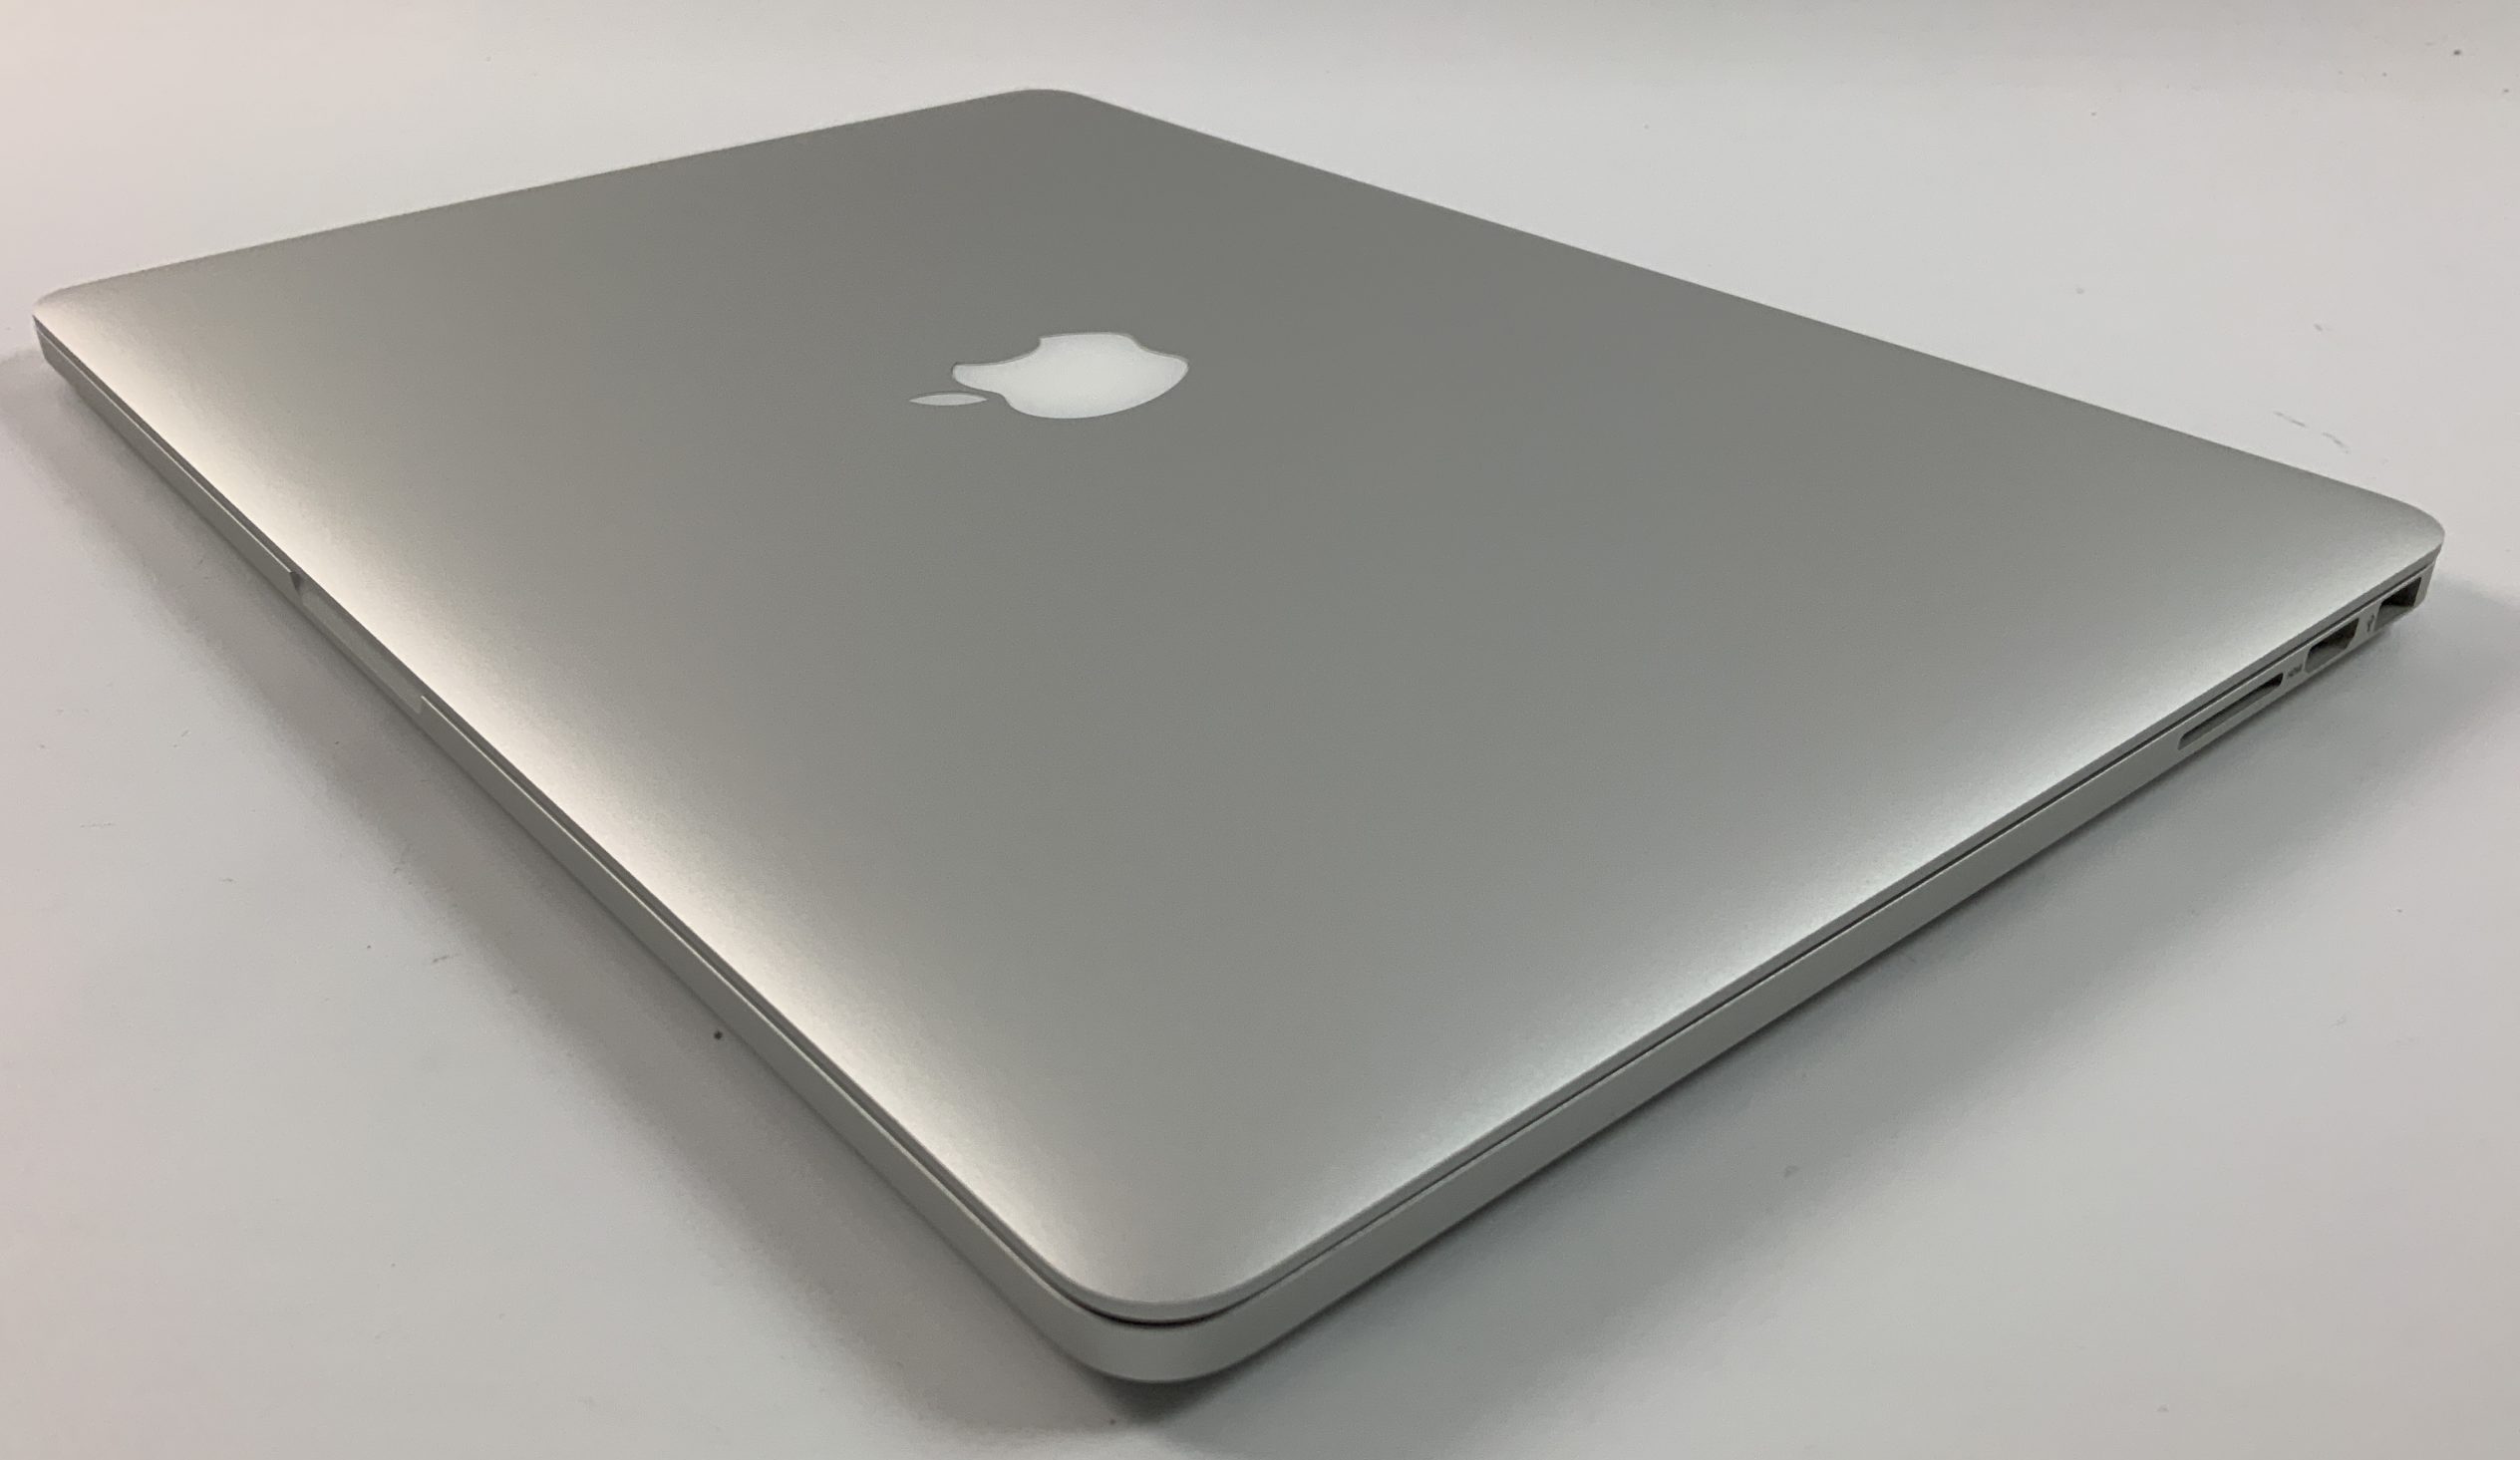 MacBook Pro Retina 15" Mid 2015 (Intel Quad-Core i7 2.2 GHz 16 GB RAM 256 GB SSD), Intel Quad-Core i7 2.2 GHz, 16 GB RAM, 256 GB SSD, obraz 3